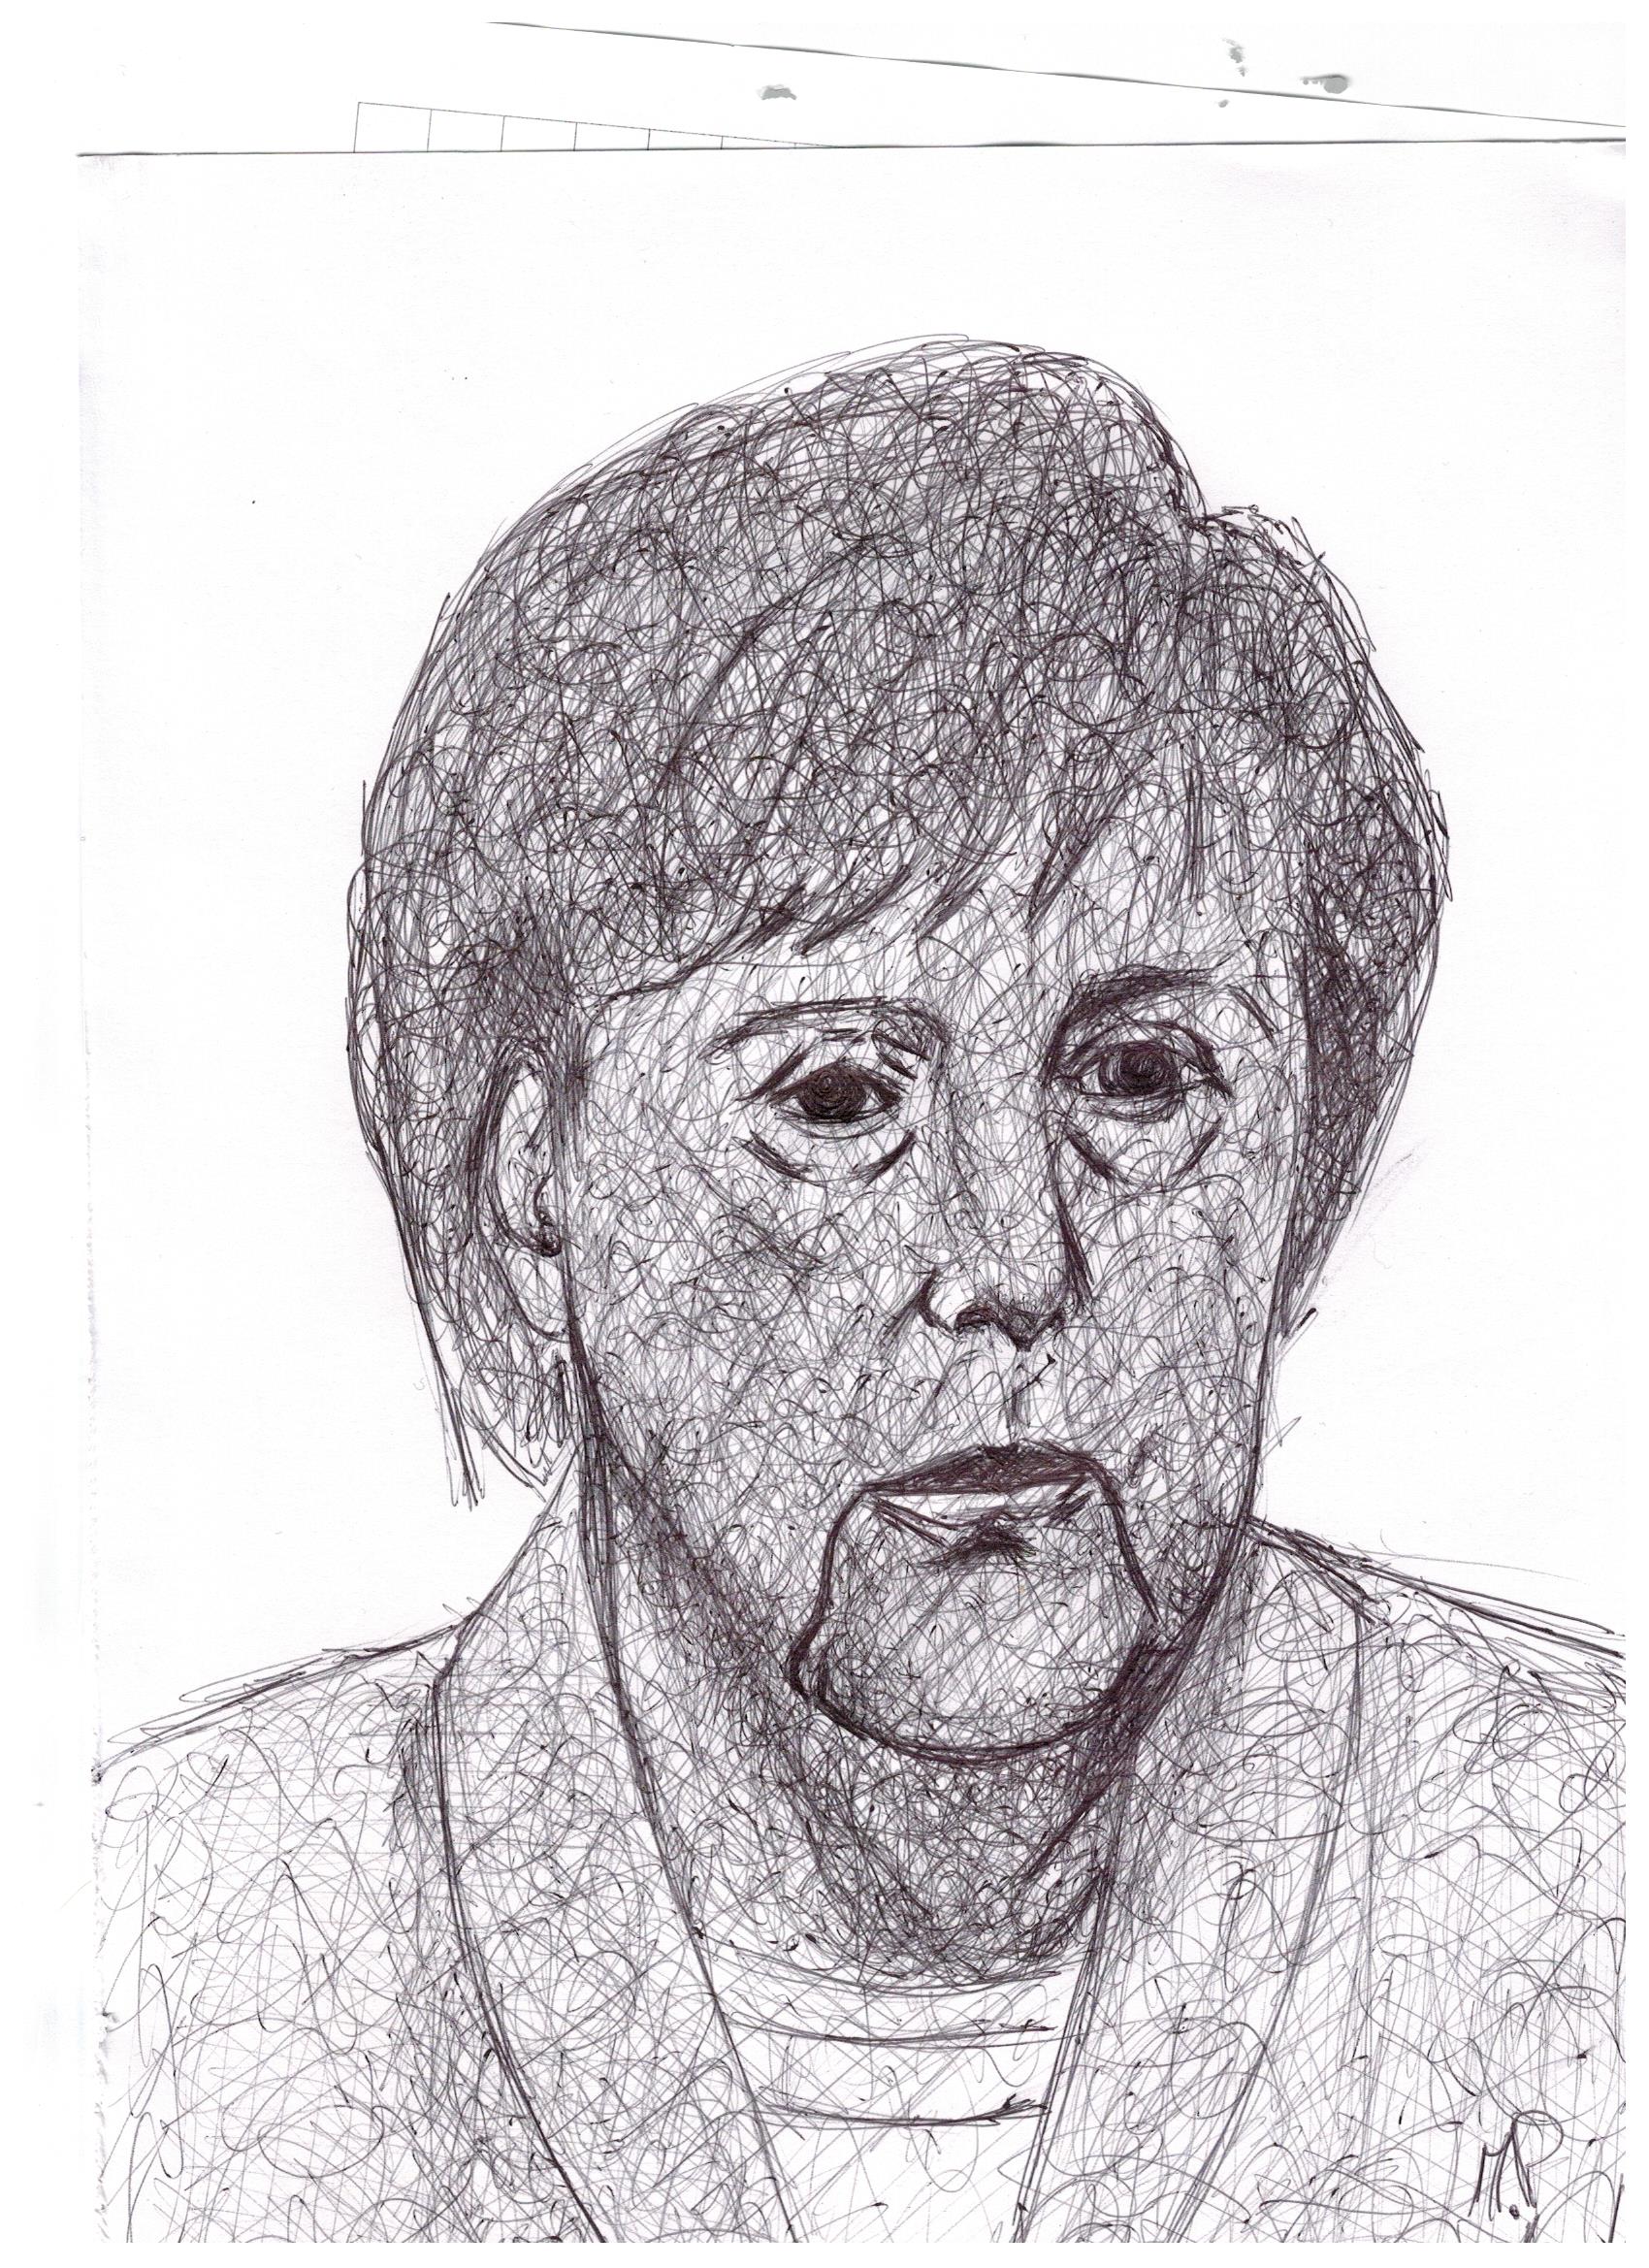 Scarabocchio a penna (Scribble in pen), Angela Merkel, 2017 disegno a penna su carta, cm 24x32,Pasquale Mastrogiacomo, Acerno (SA).